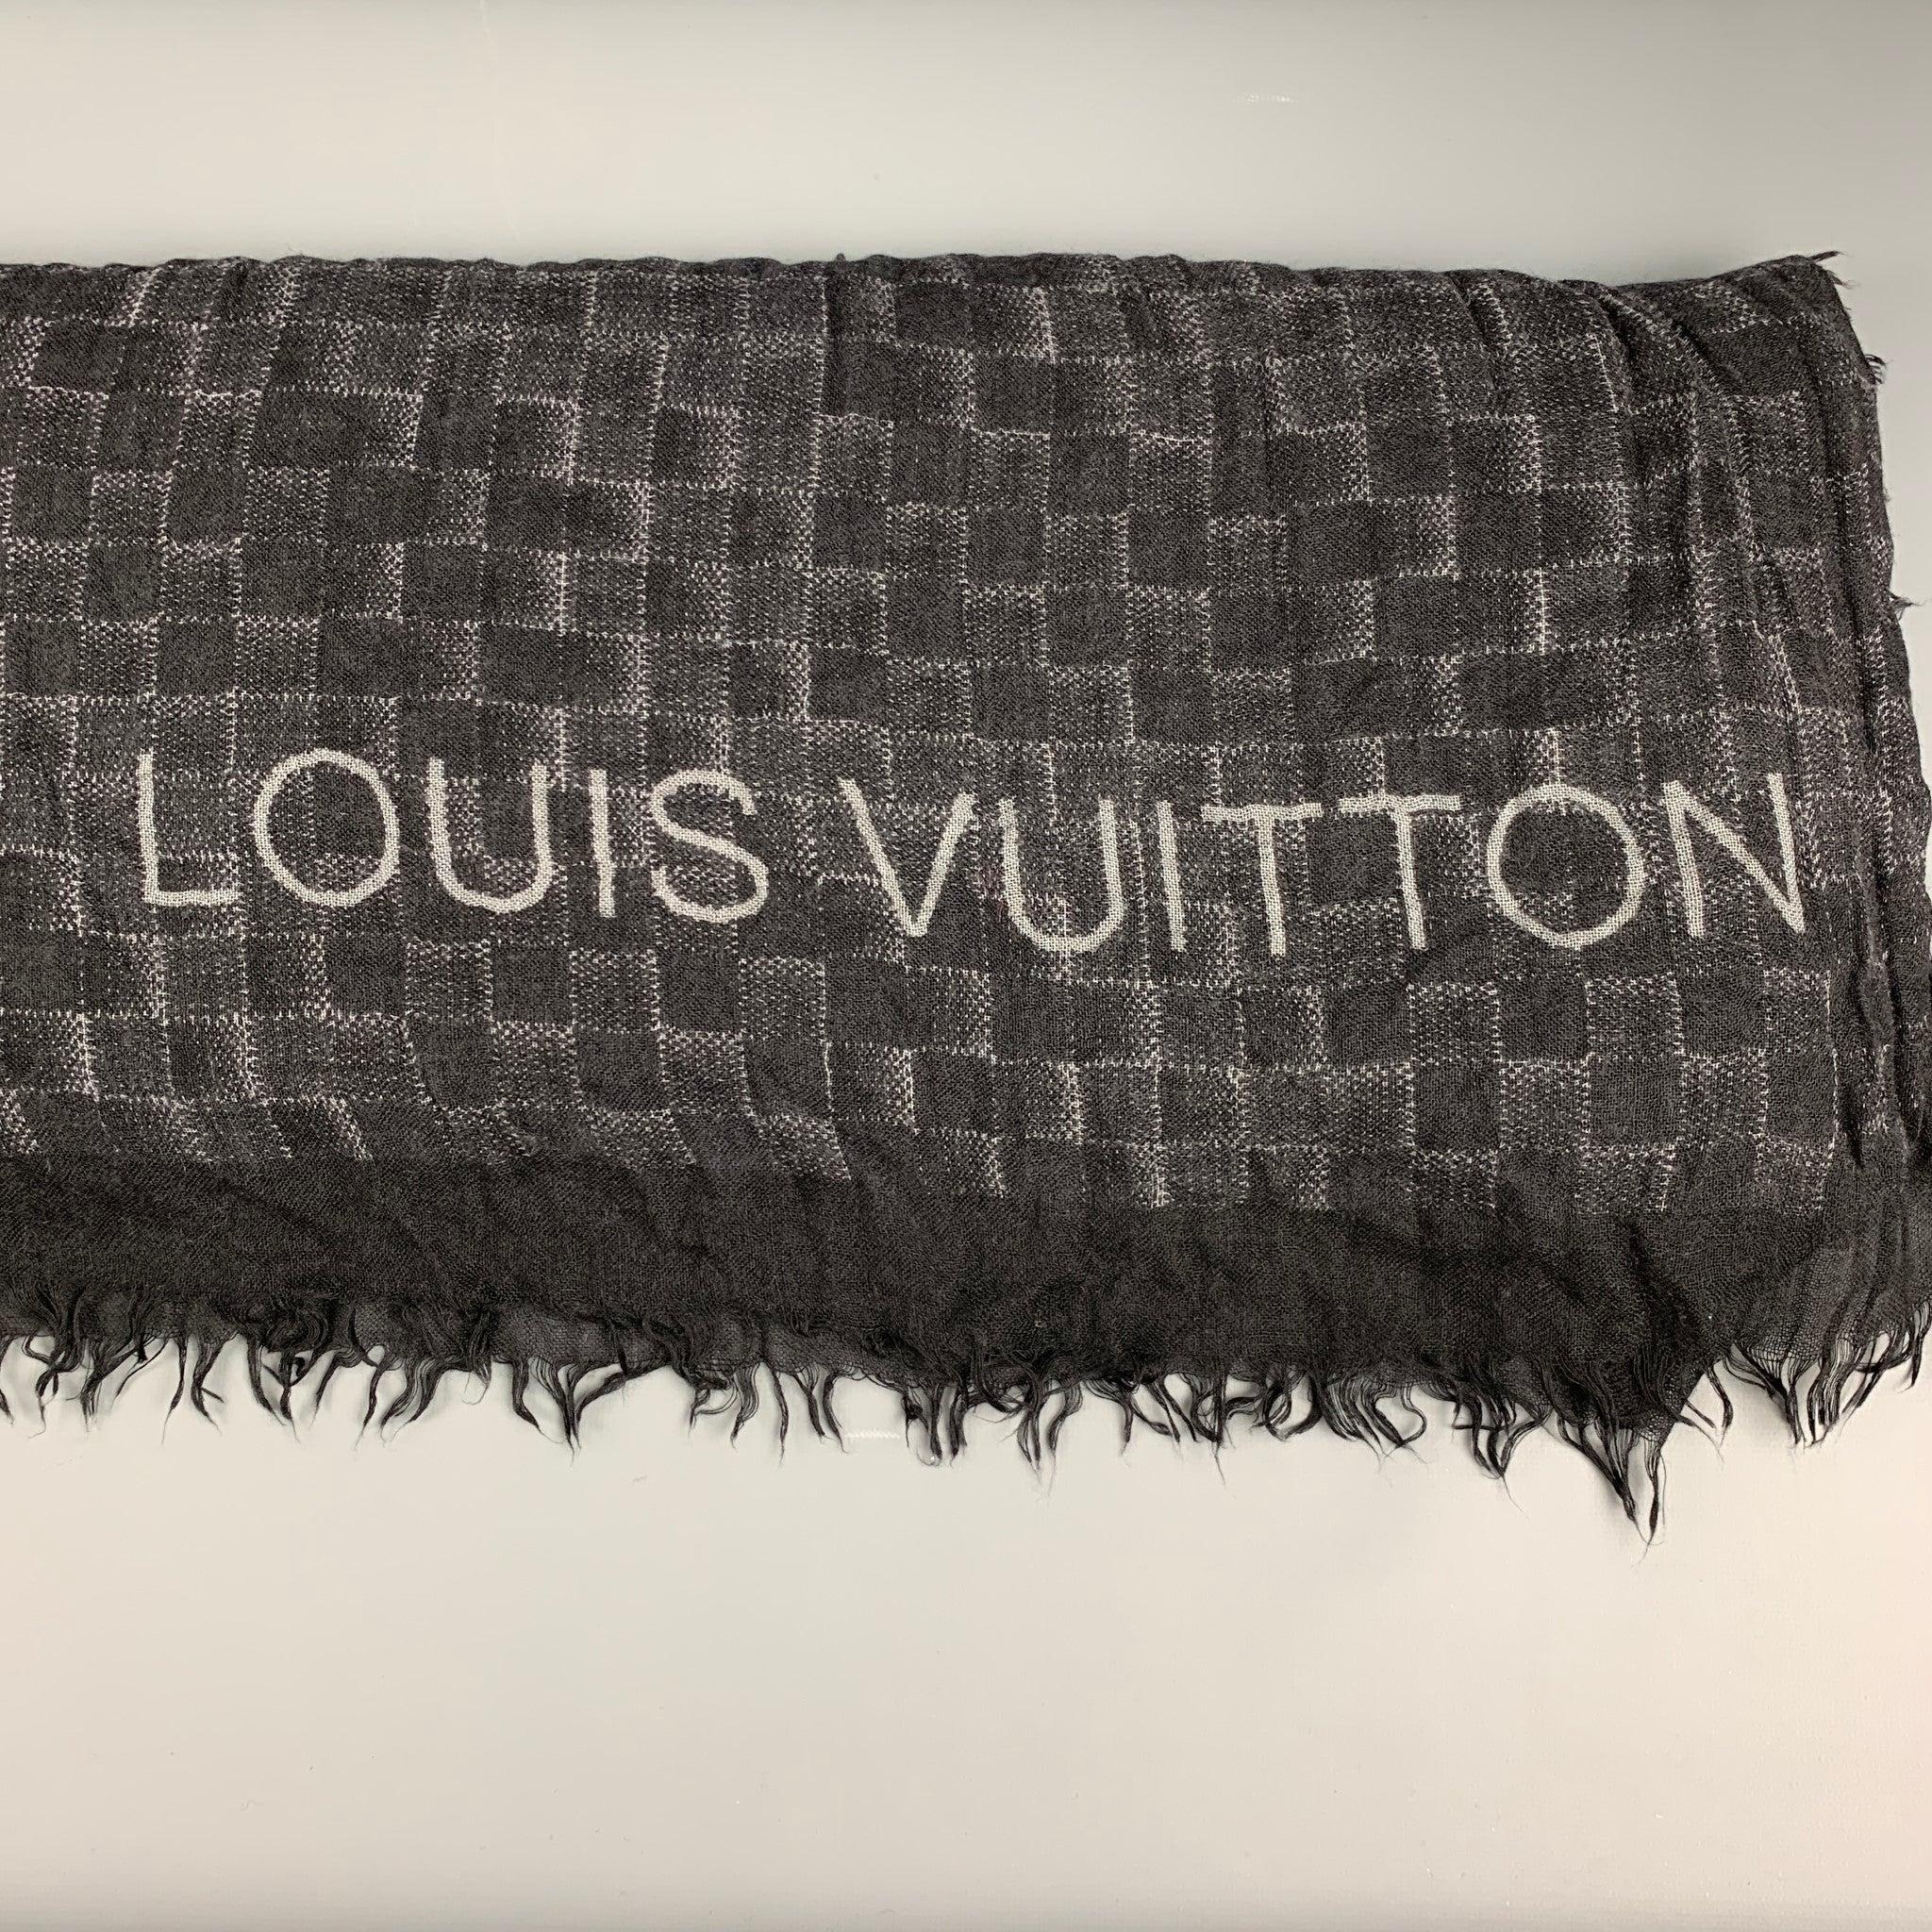 L'écharpe LOUIS VUITTON est imprimée en damier noir et gris et bordée d'une frange. Fabriquées en Italie. Très bon état d'origine. 

Mesures : 
  74 pouces  x 52 pouces  
  
  
Référence : 126856
Catégorie : Foulards et écharpes
Plus de détails
   